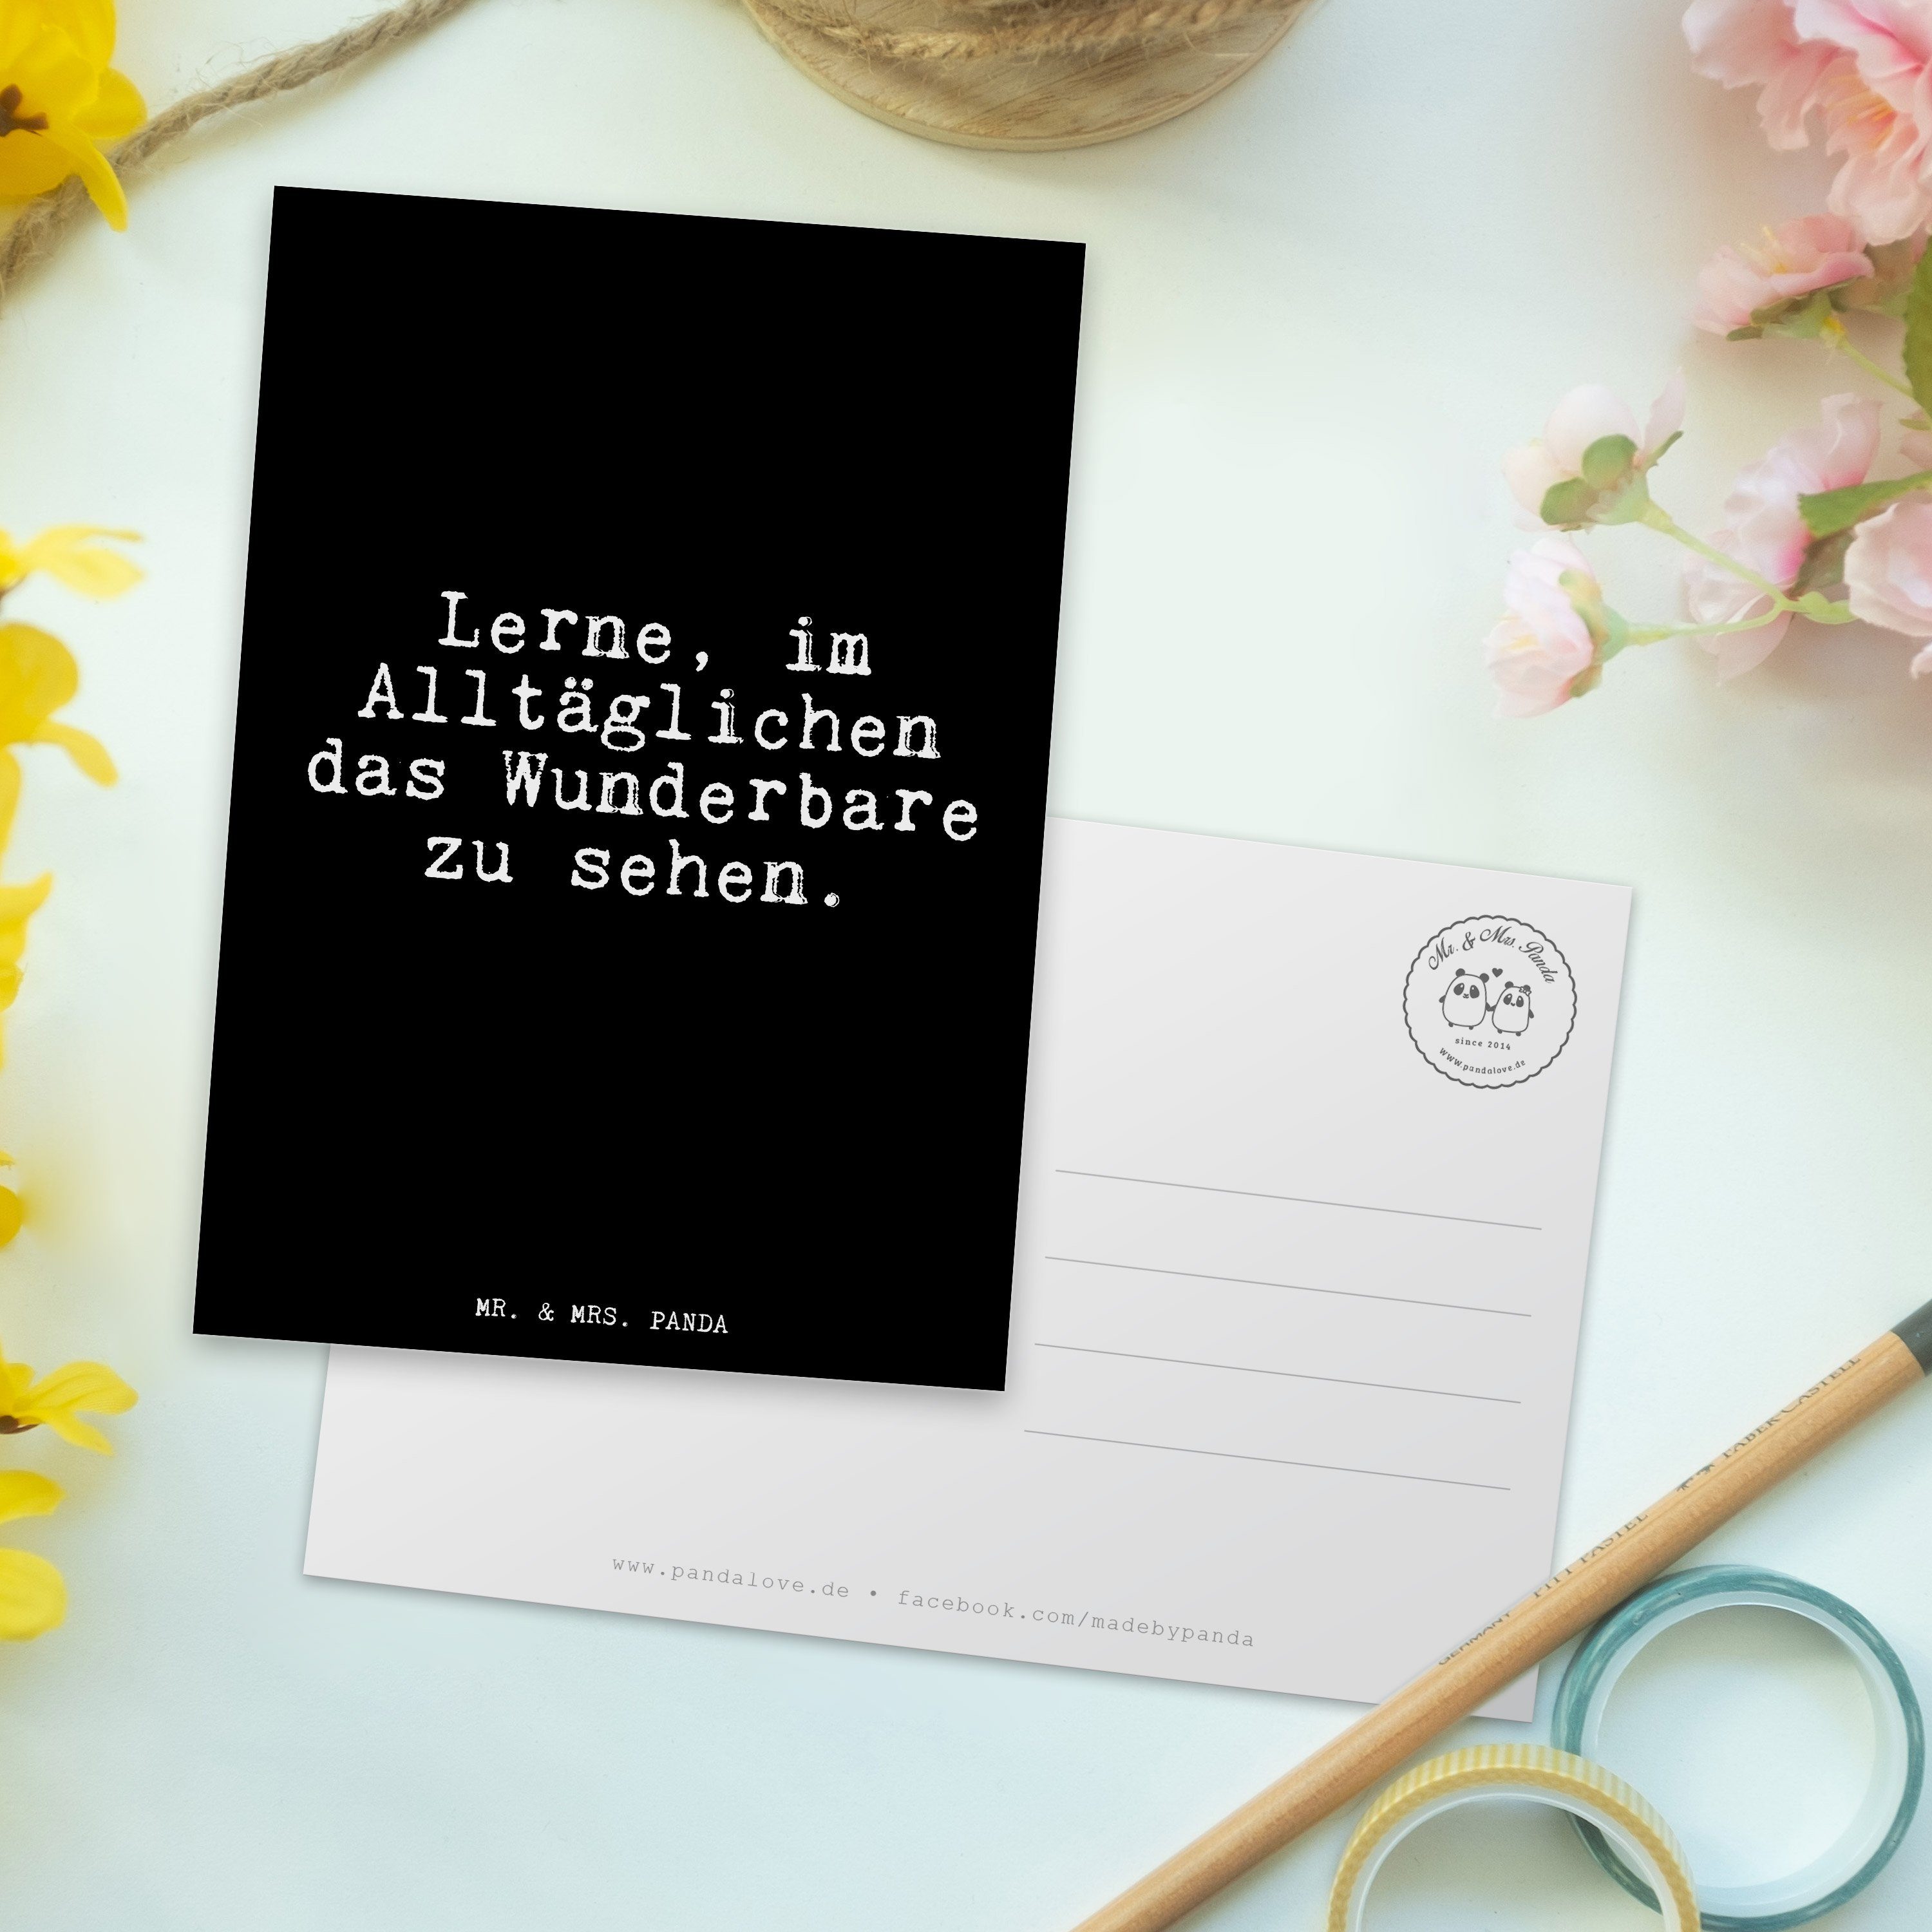 Mr. & Mrs. Panda im Alltäglichen das... - Postkarte Leben, Einladung - Geschenk, Lerne, Schwarz